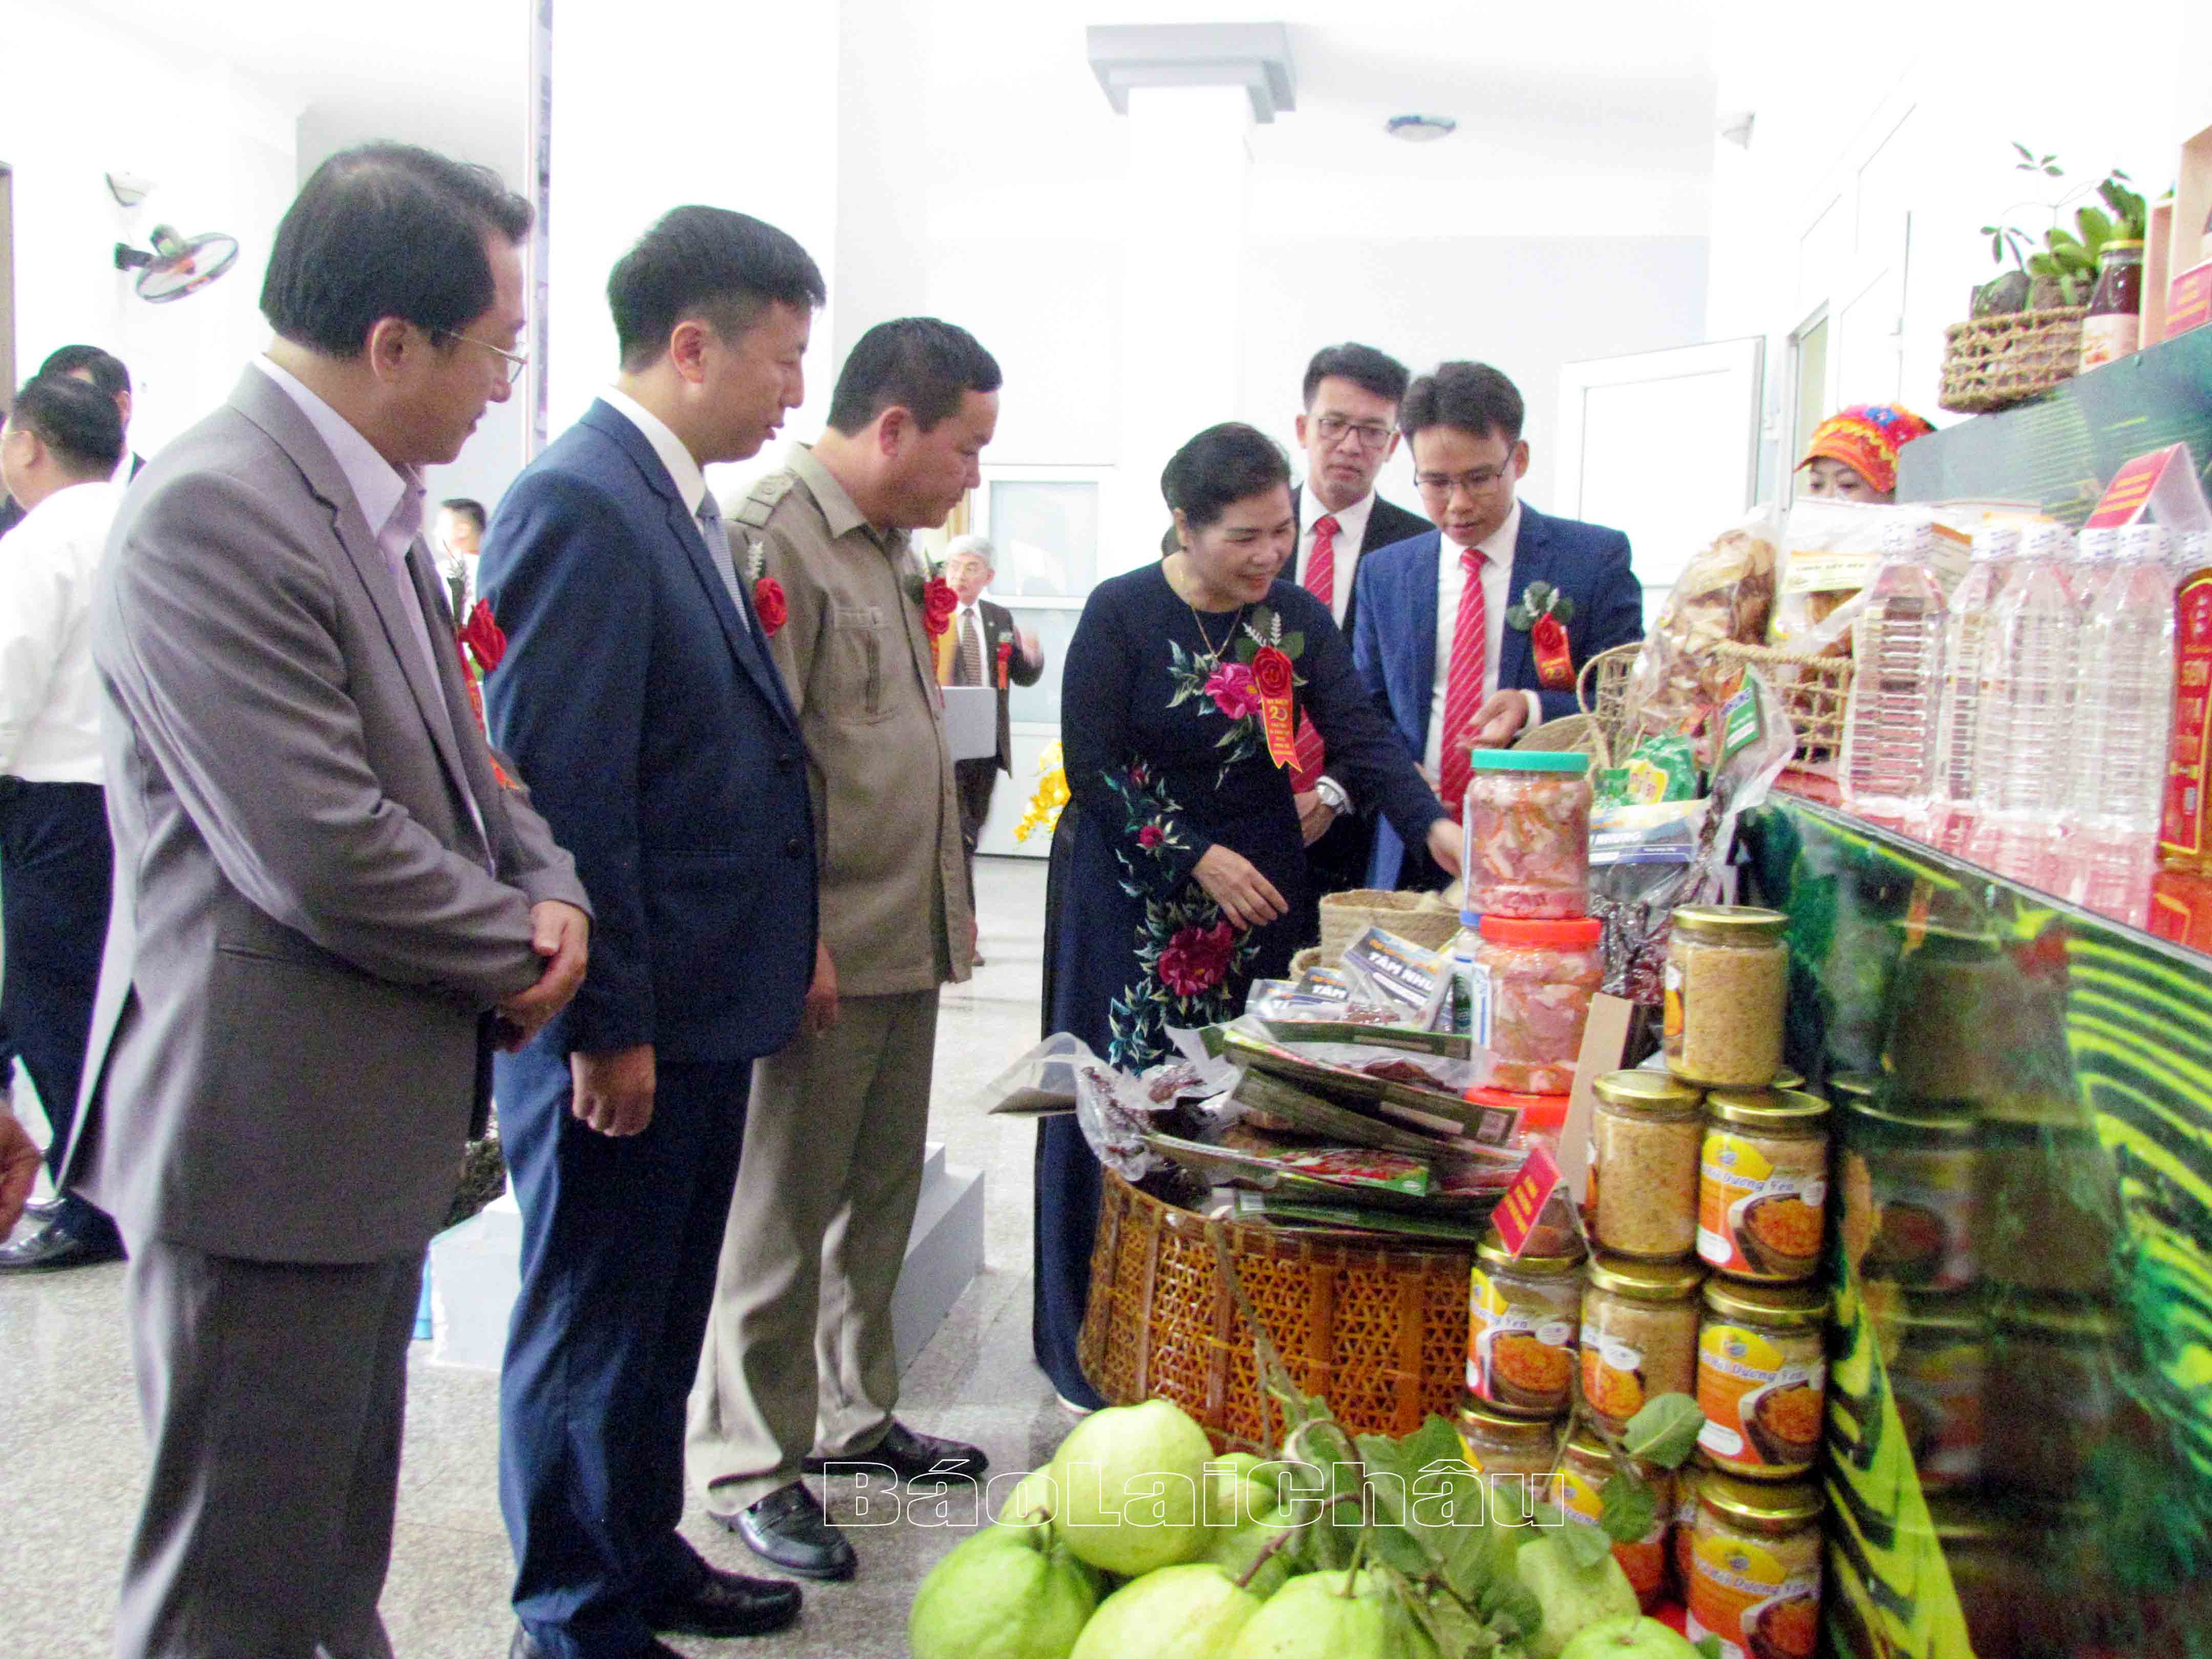 Các đồng chí lãnh đạo tỉnh, huyện Phong Thổ thăm quan các sản phẩm nông nghiệp tiêu biểu của huyện Phong Thổ.